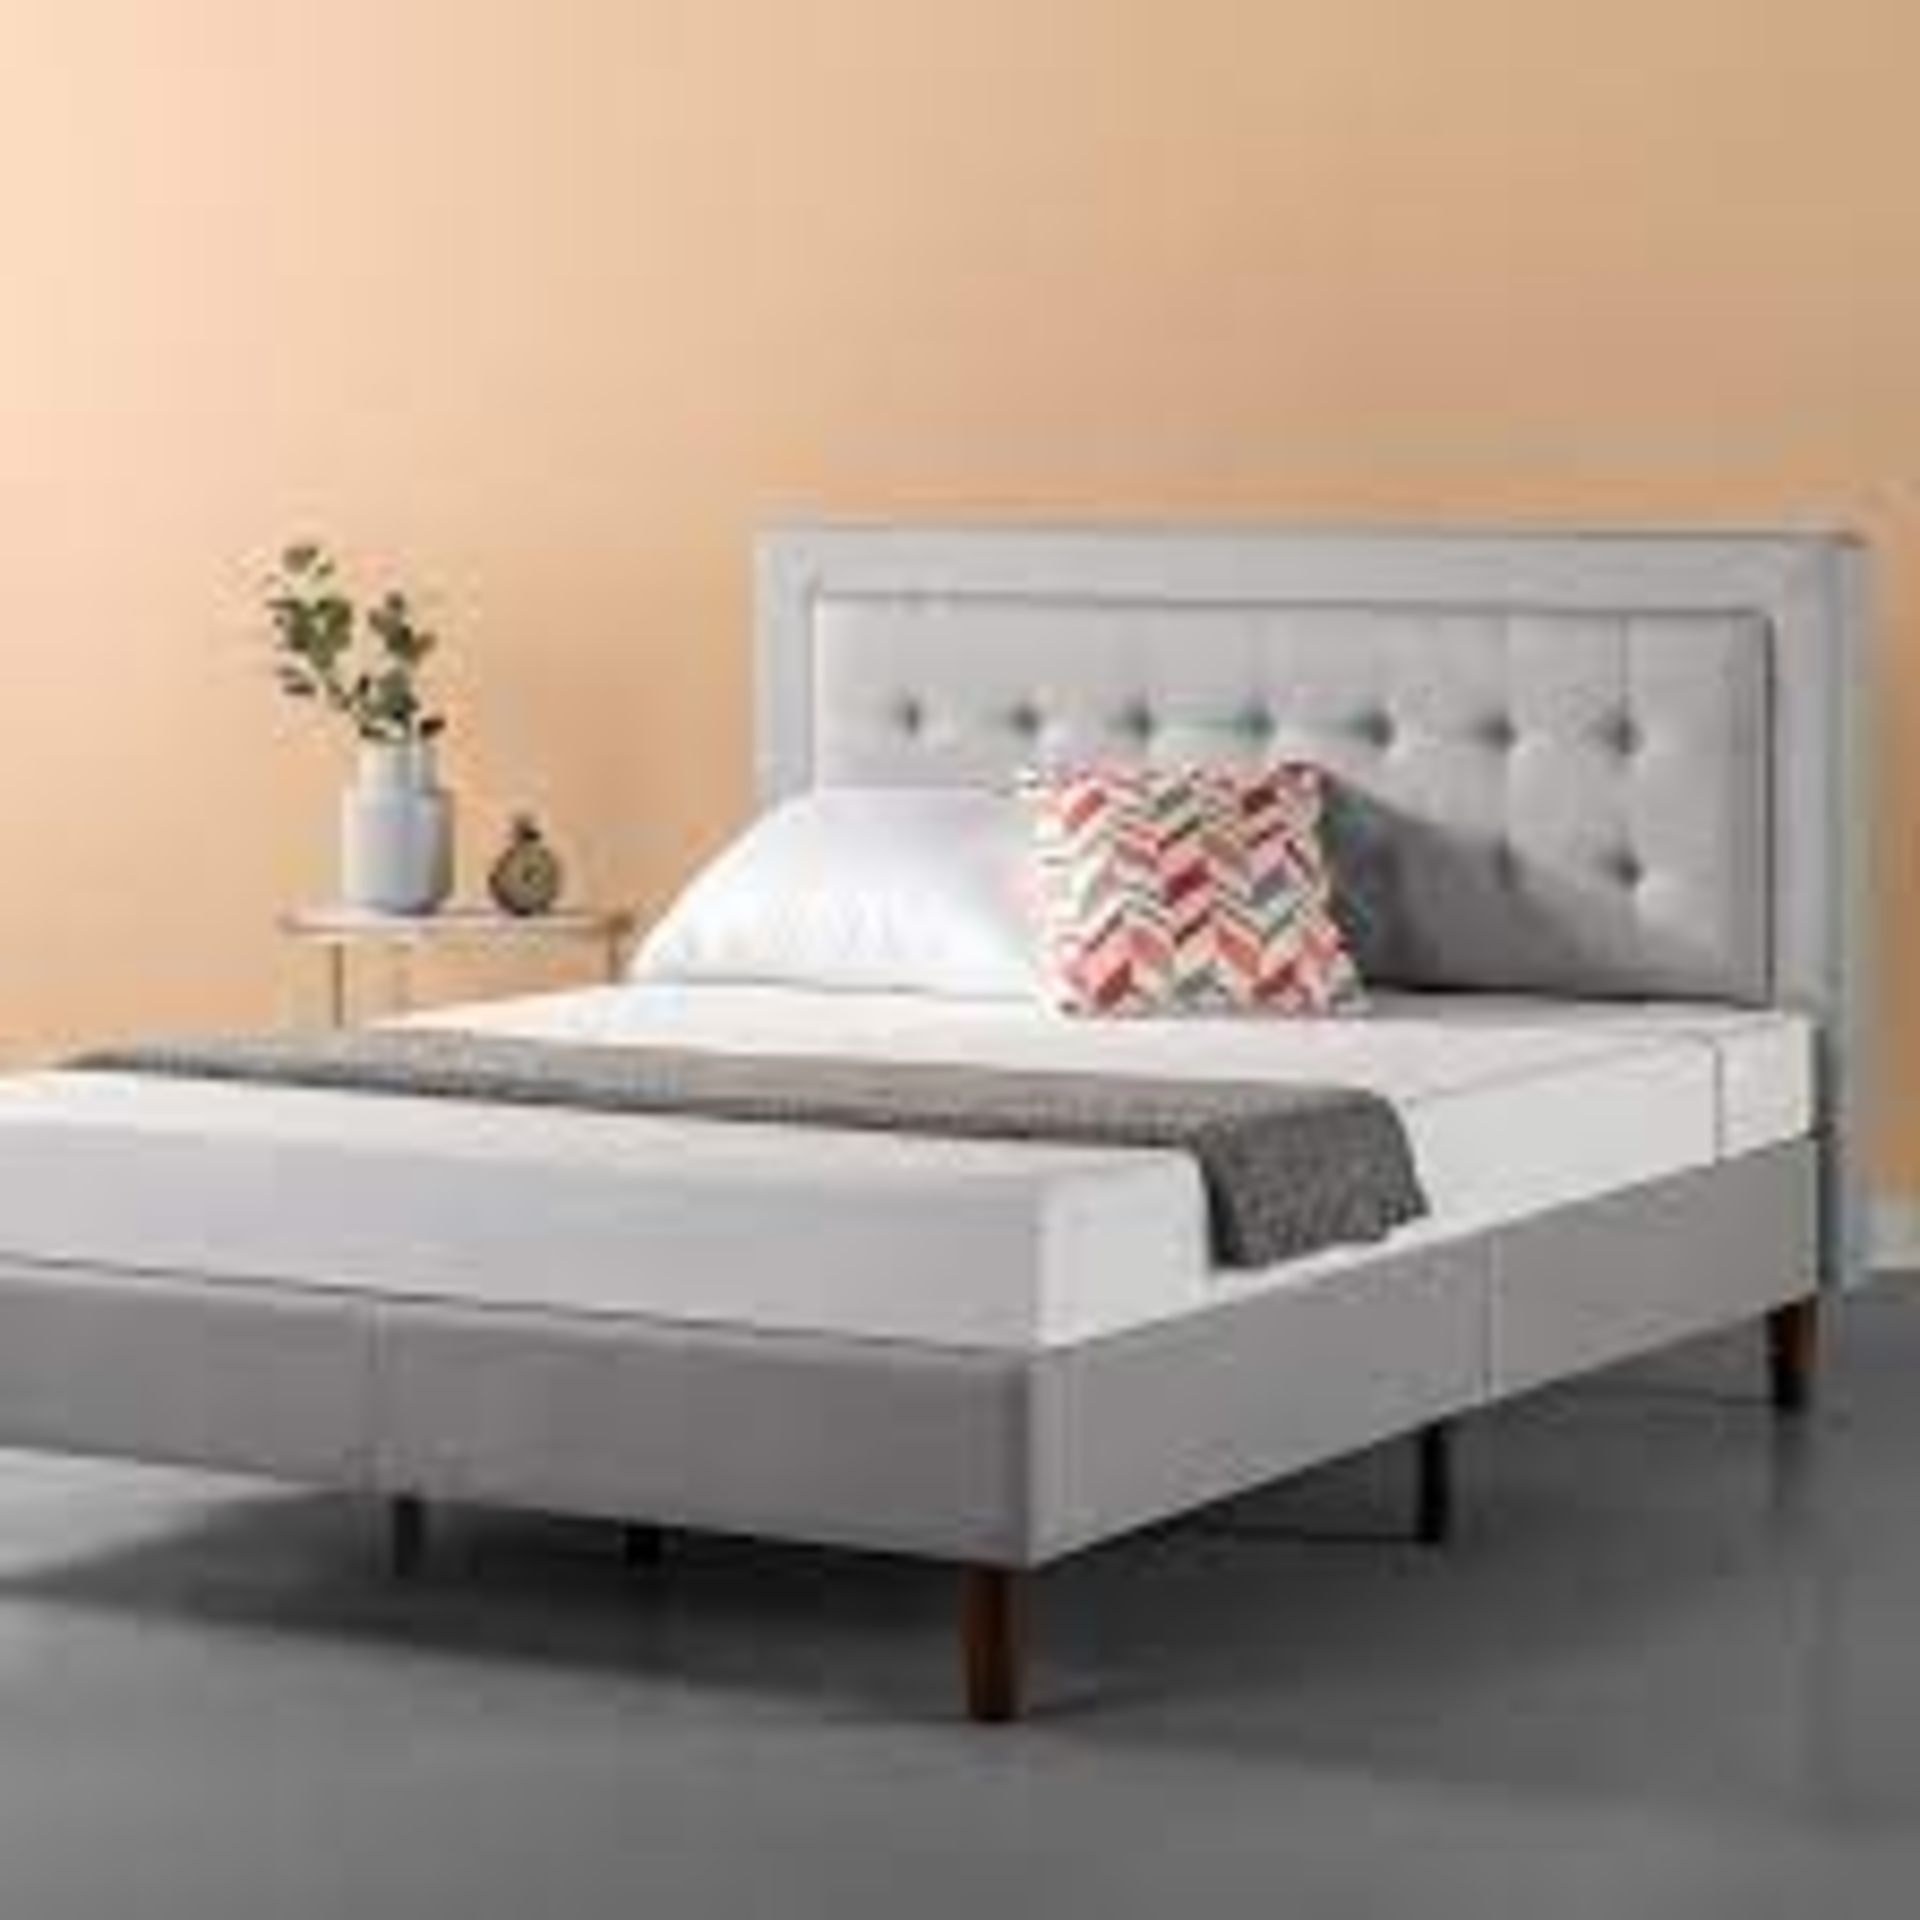 Atkin Upholstered Platform Bed Brayden. Double. RRP £229.99. Brayden Studio Transform your bedroom - Image 2 of 2